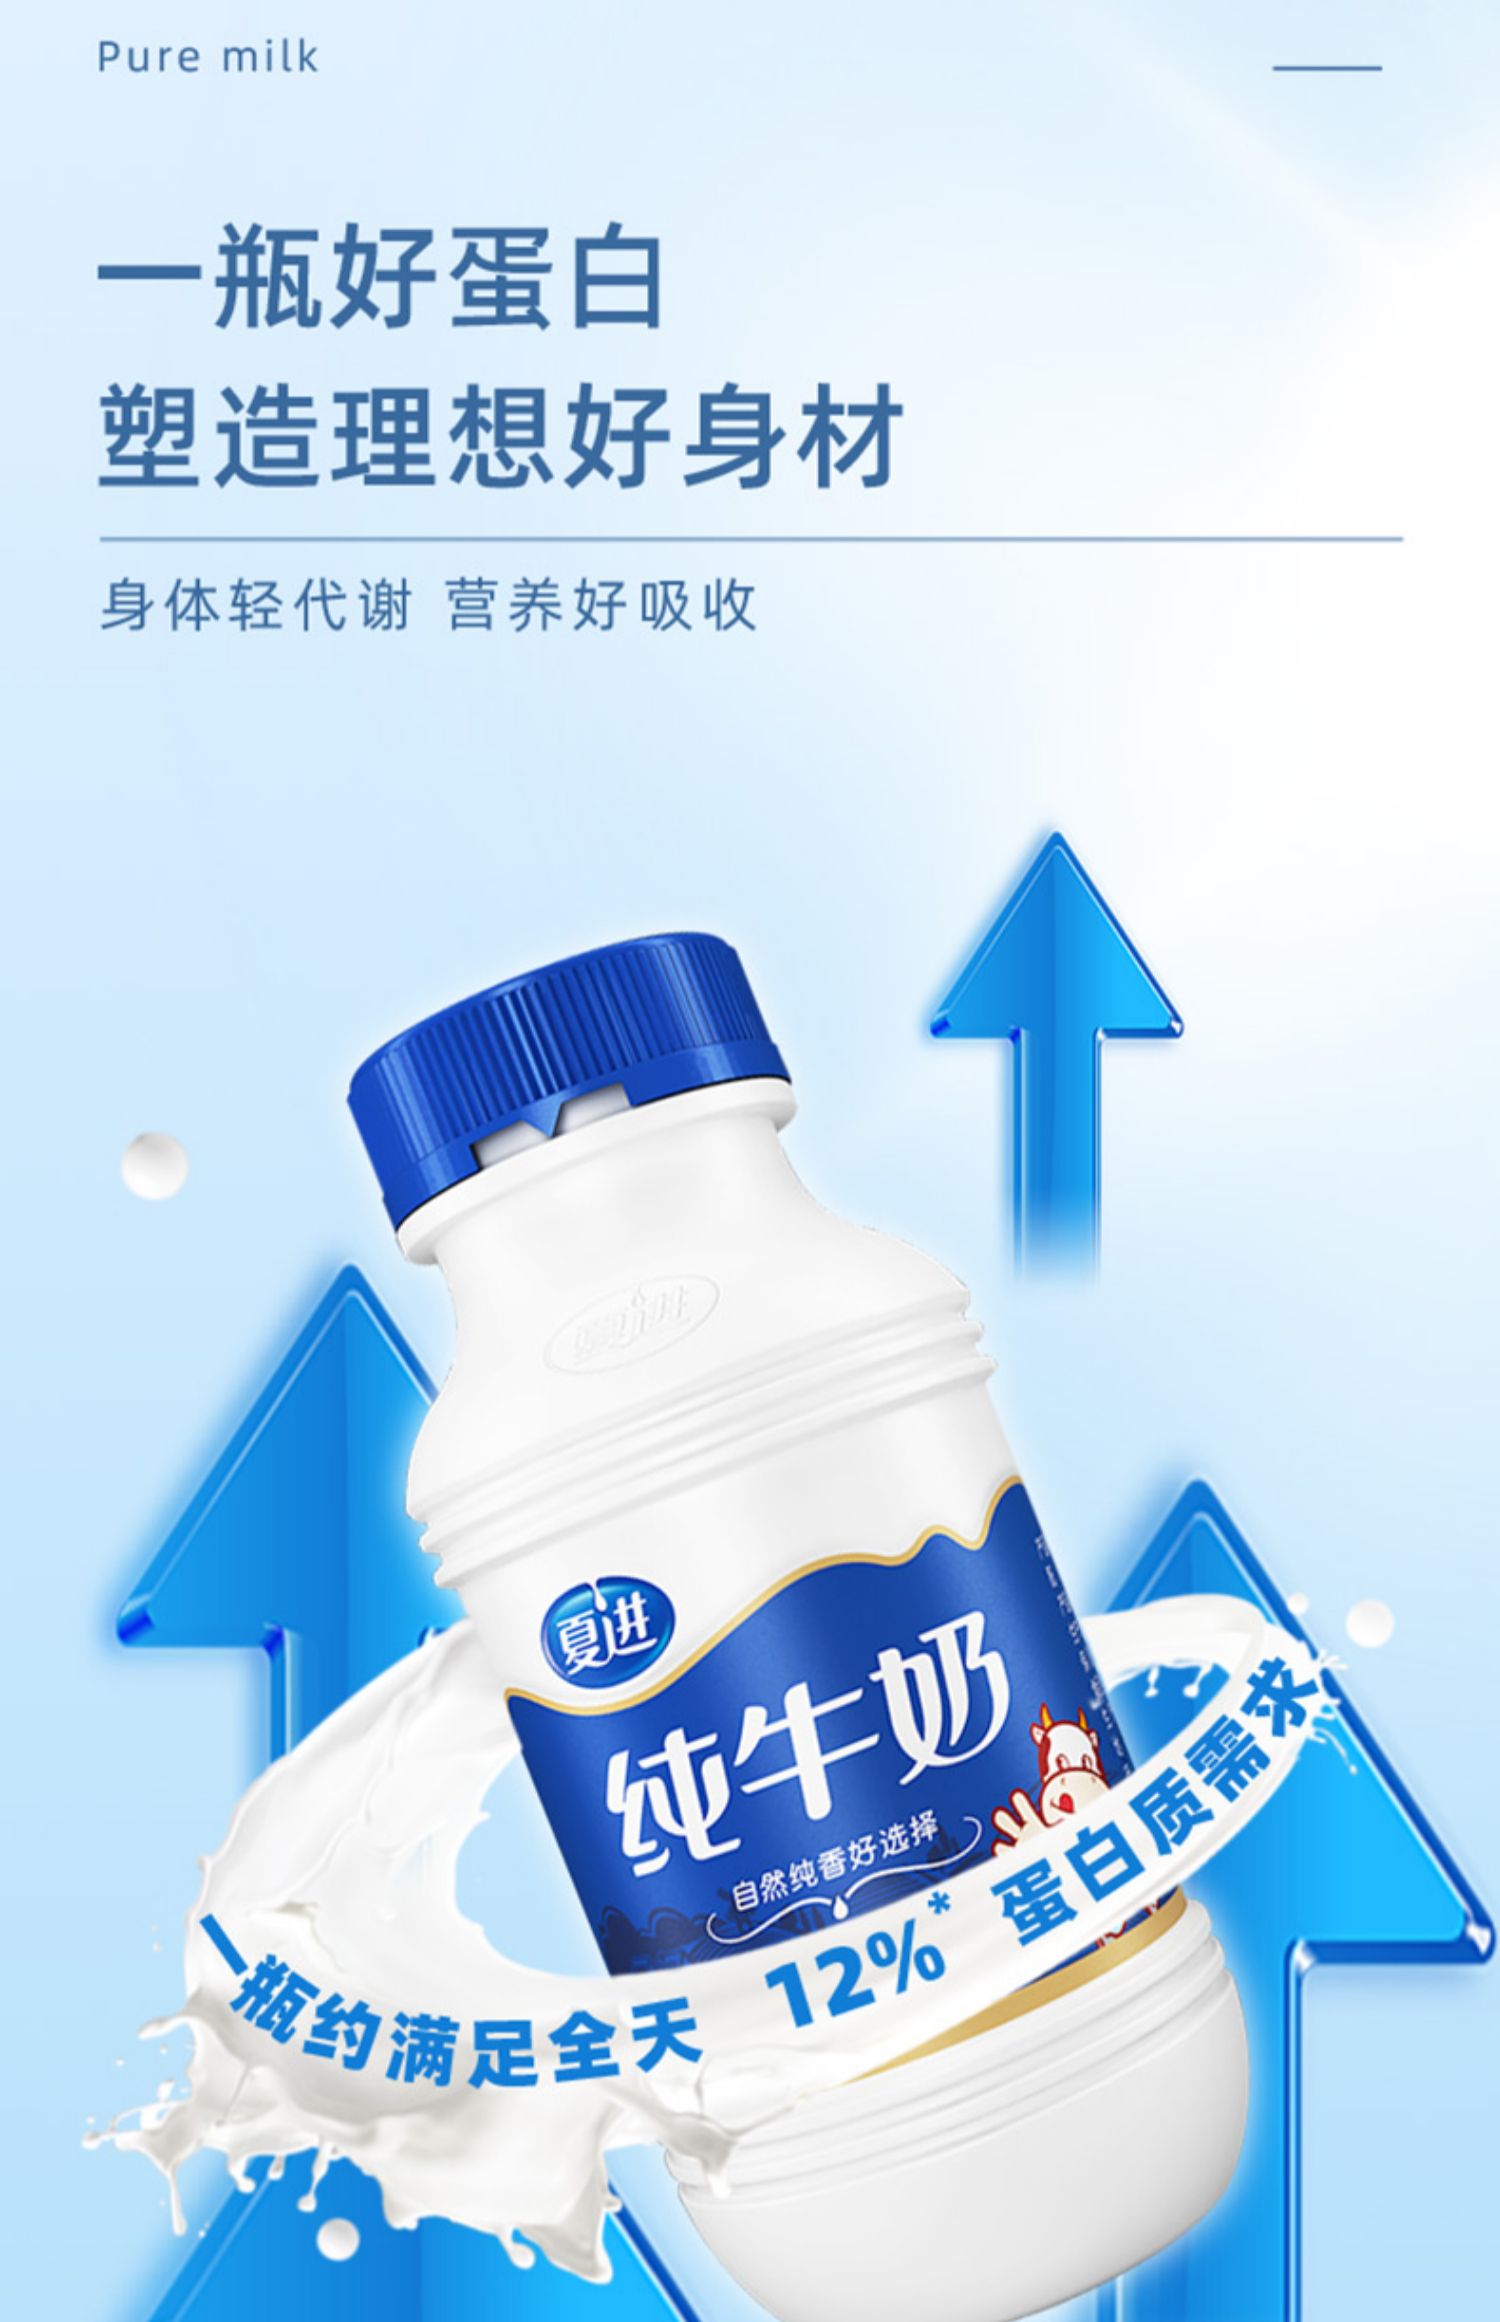 【夏进】瓶装纯牛奶243ml*24瓶